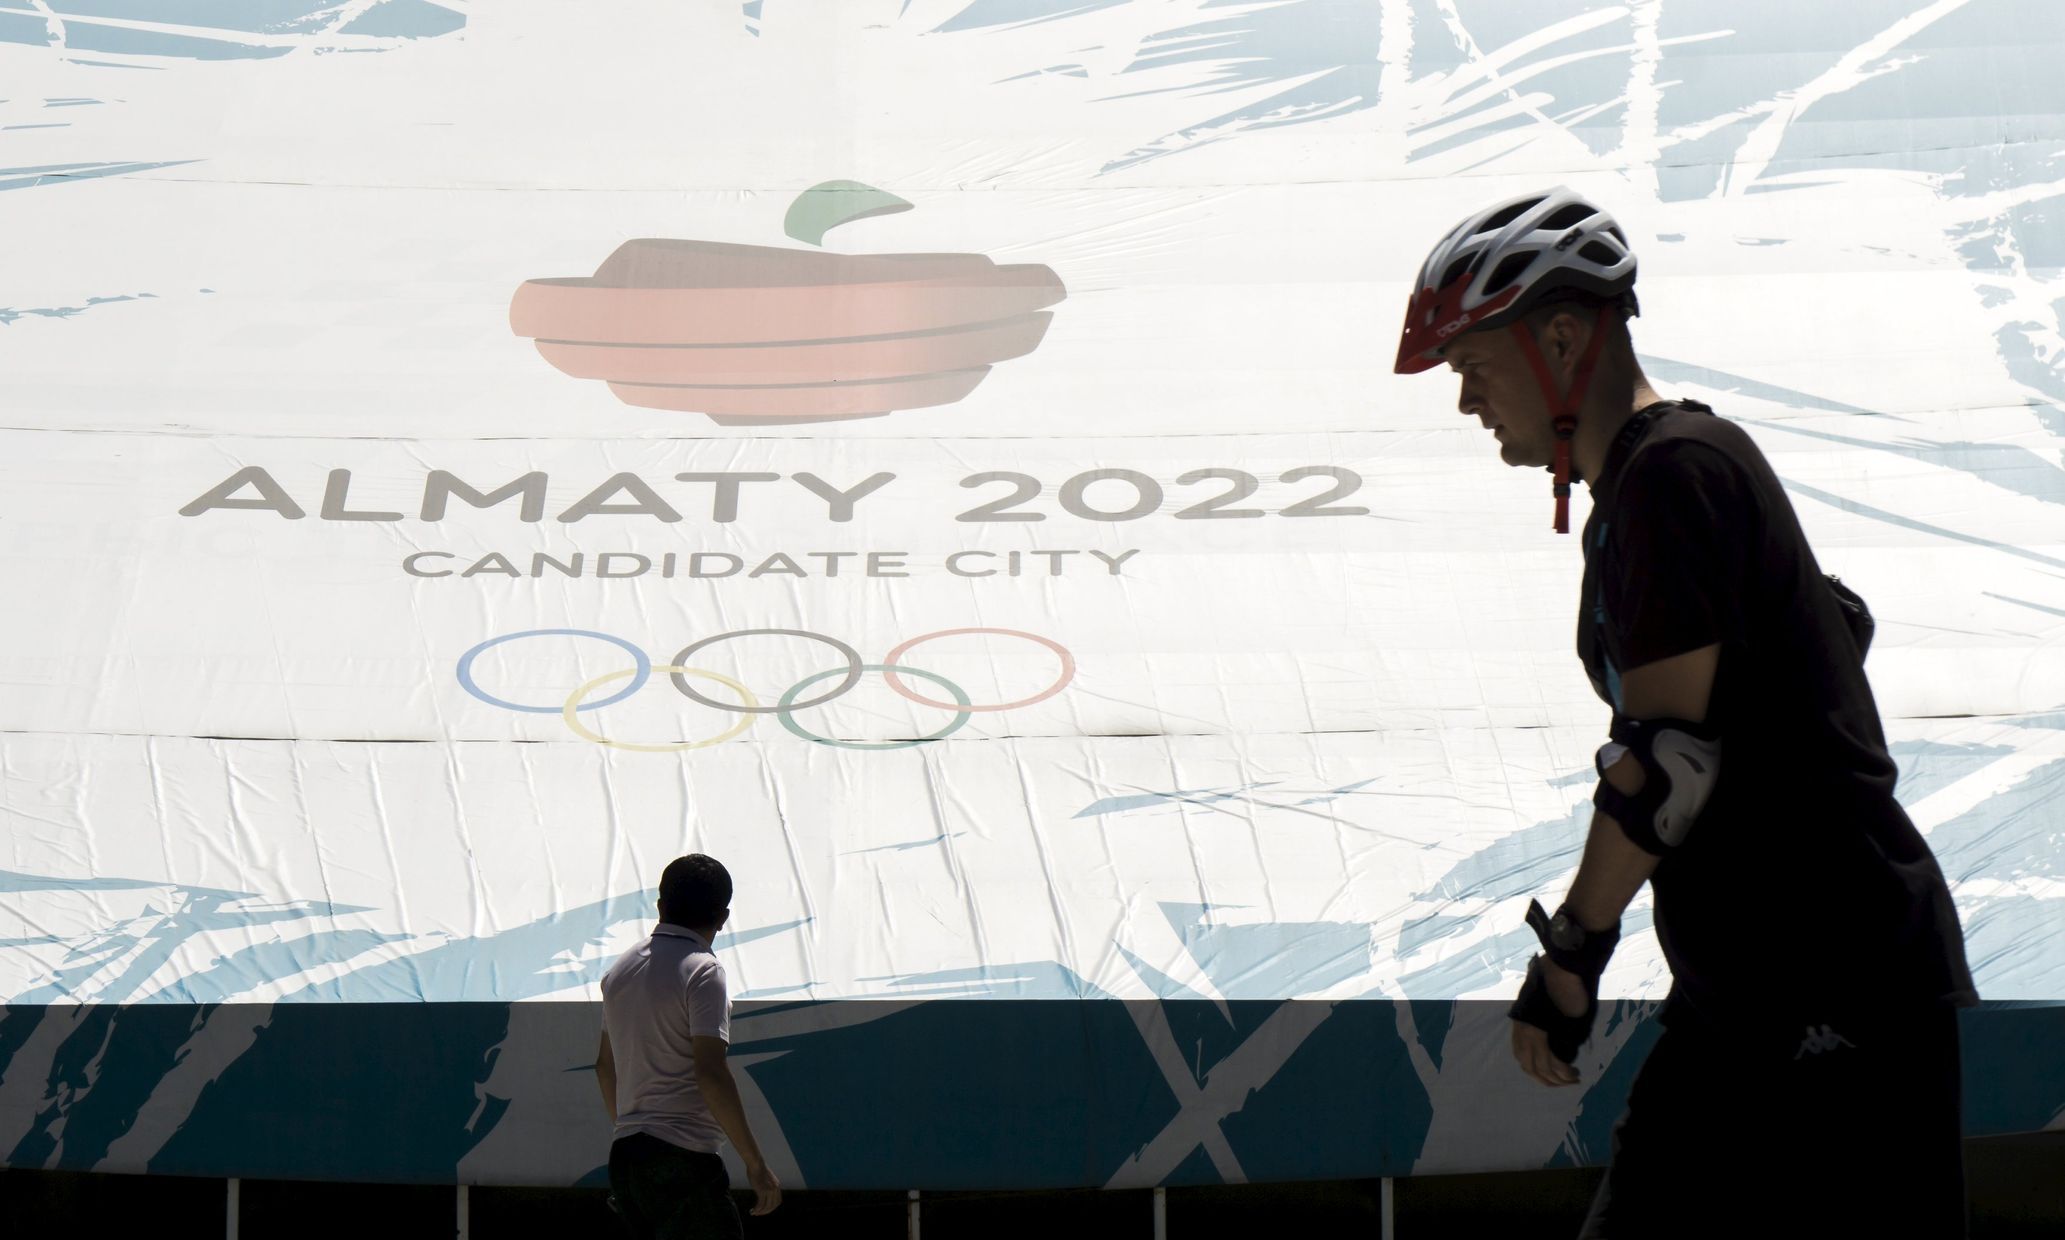 Almaty, kandidát na olympiádu v roce 2022